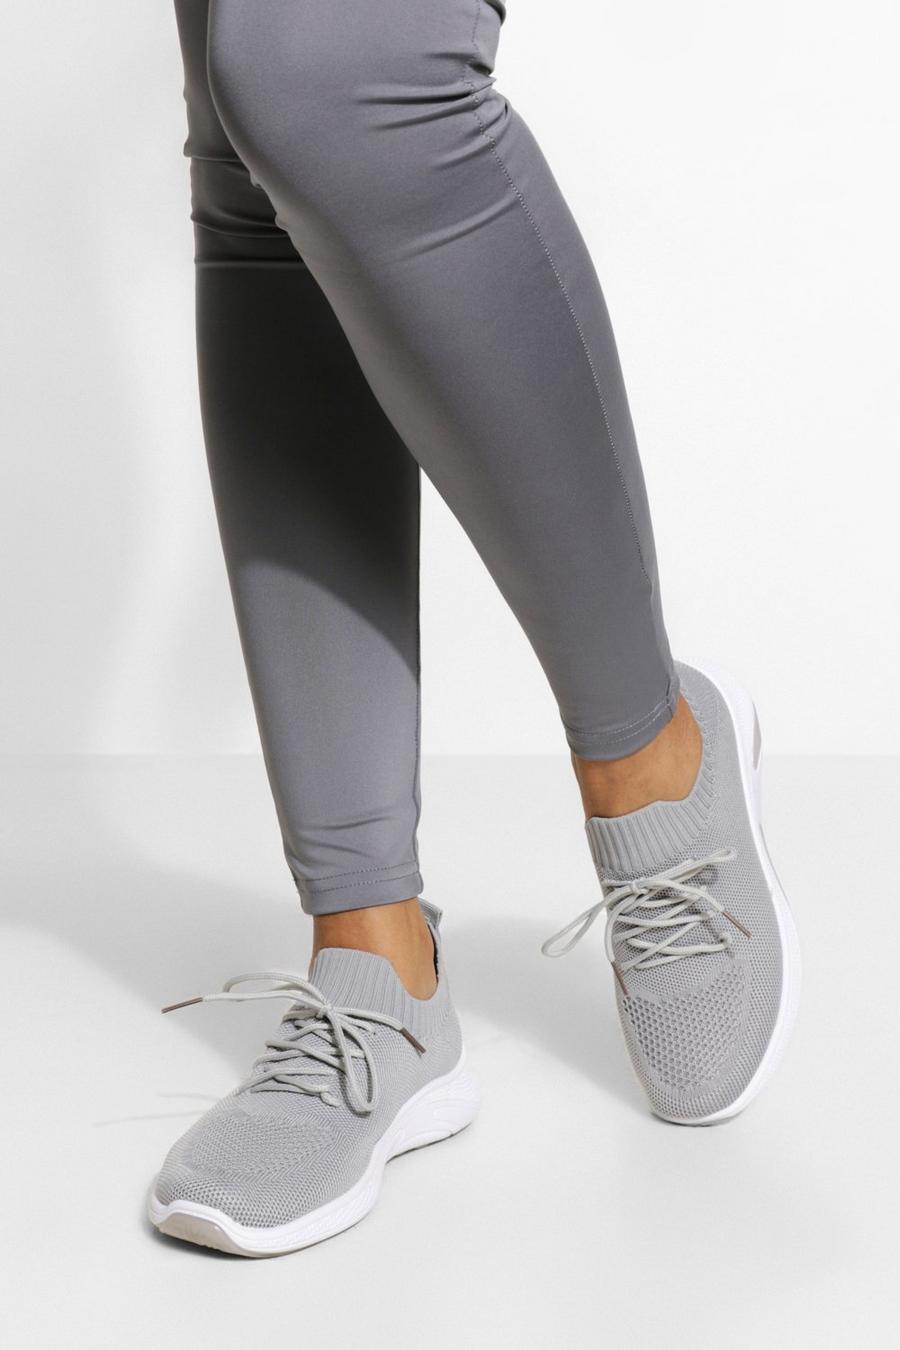 BASICS Sport-Sneaker aus Strick in breiter Passform, Grau grey